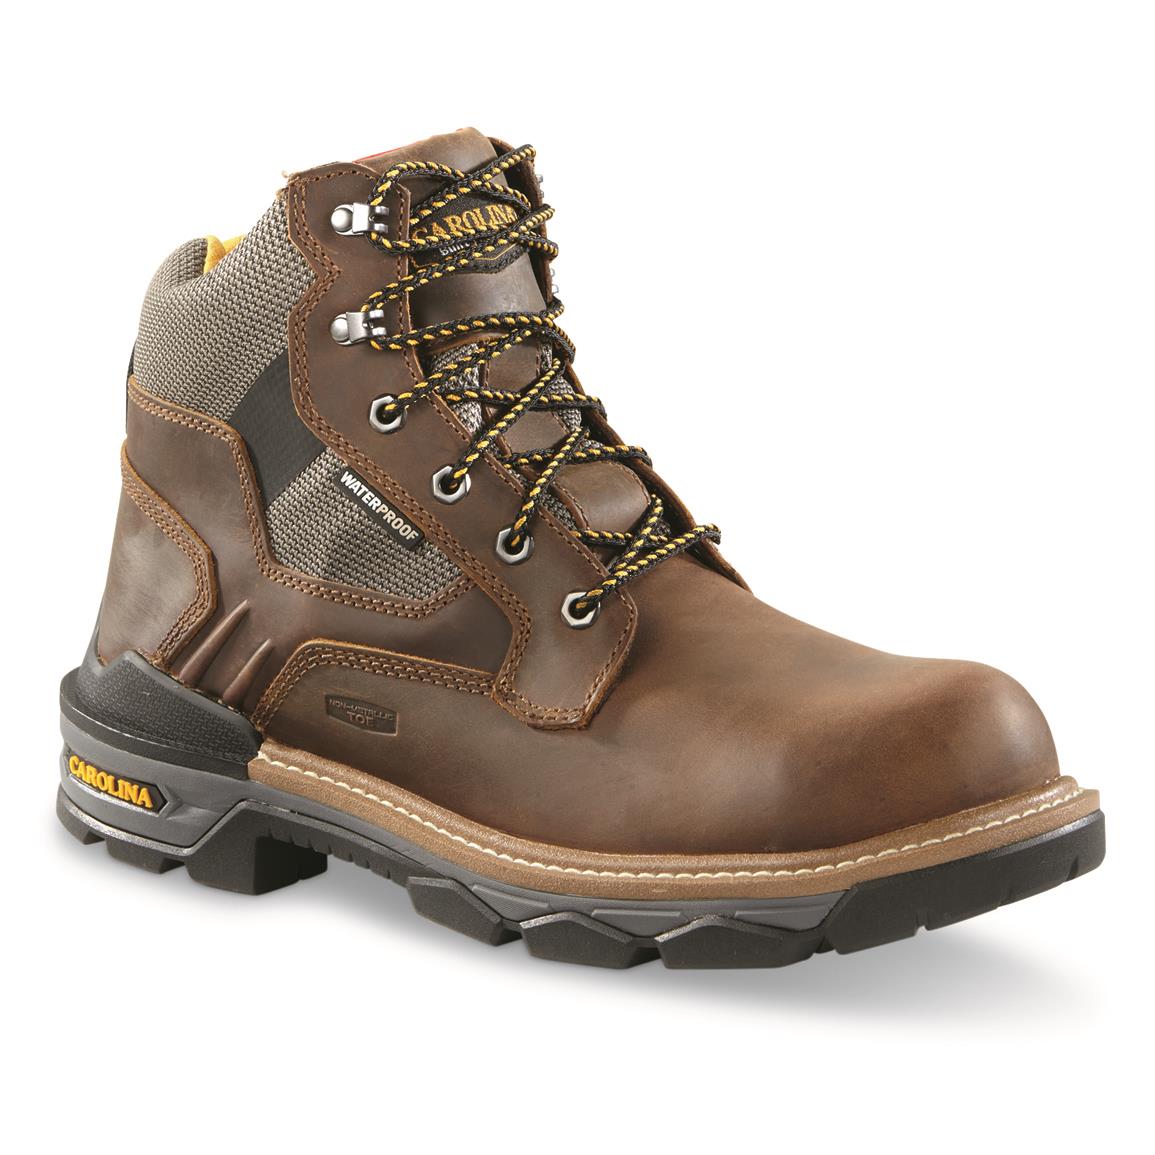 Men's Carolina Cancellor 6" Composite Toe Work Boots, Brown